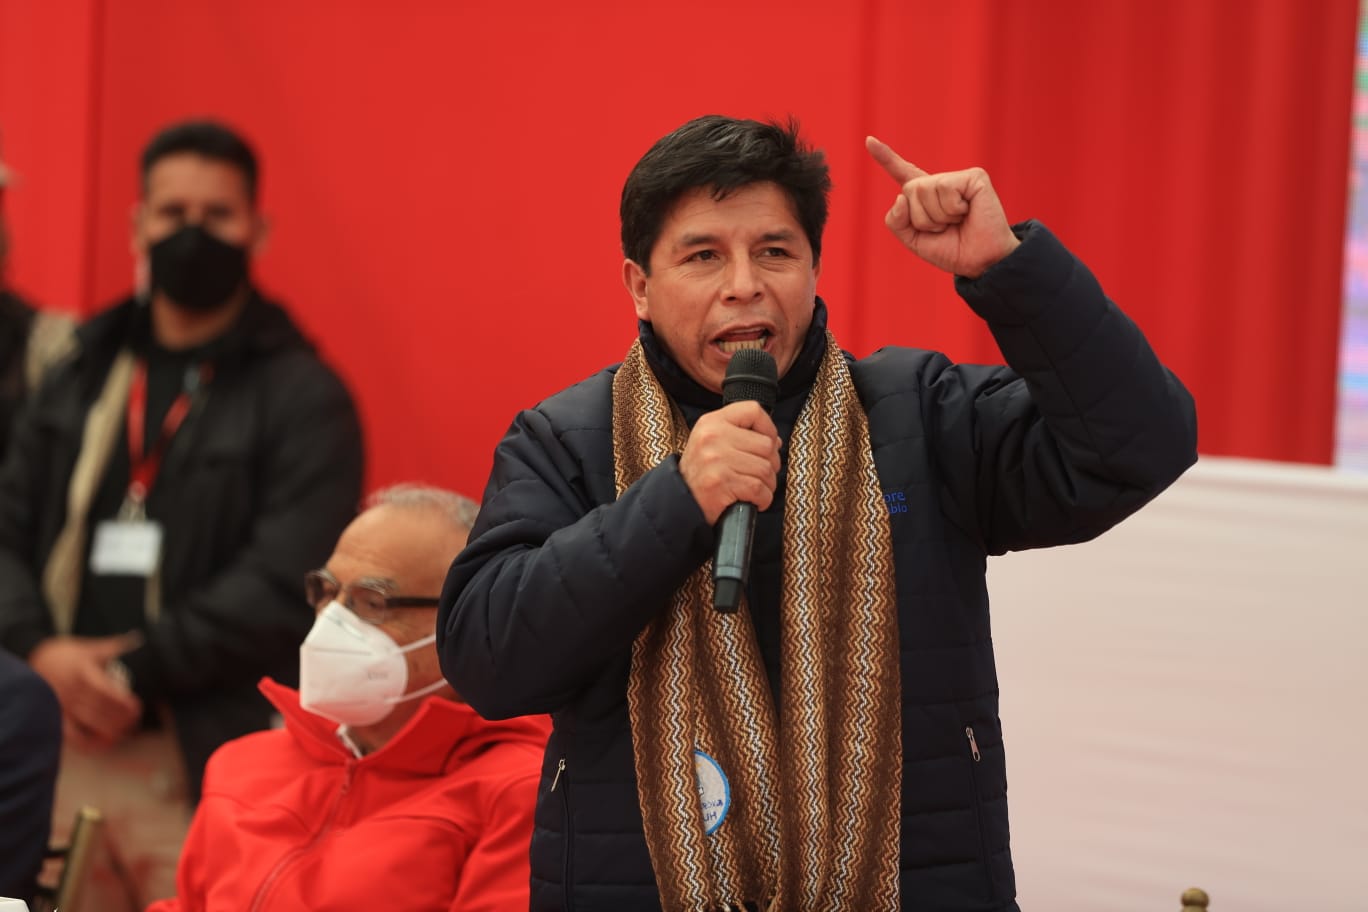 PERÚ: Presidente Castillo anuncia proyecto de ley para que delincuentes trabajen y asuman sus gastos